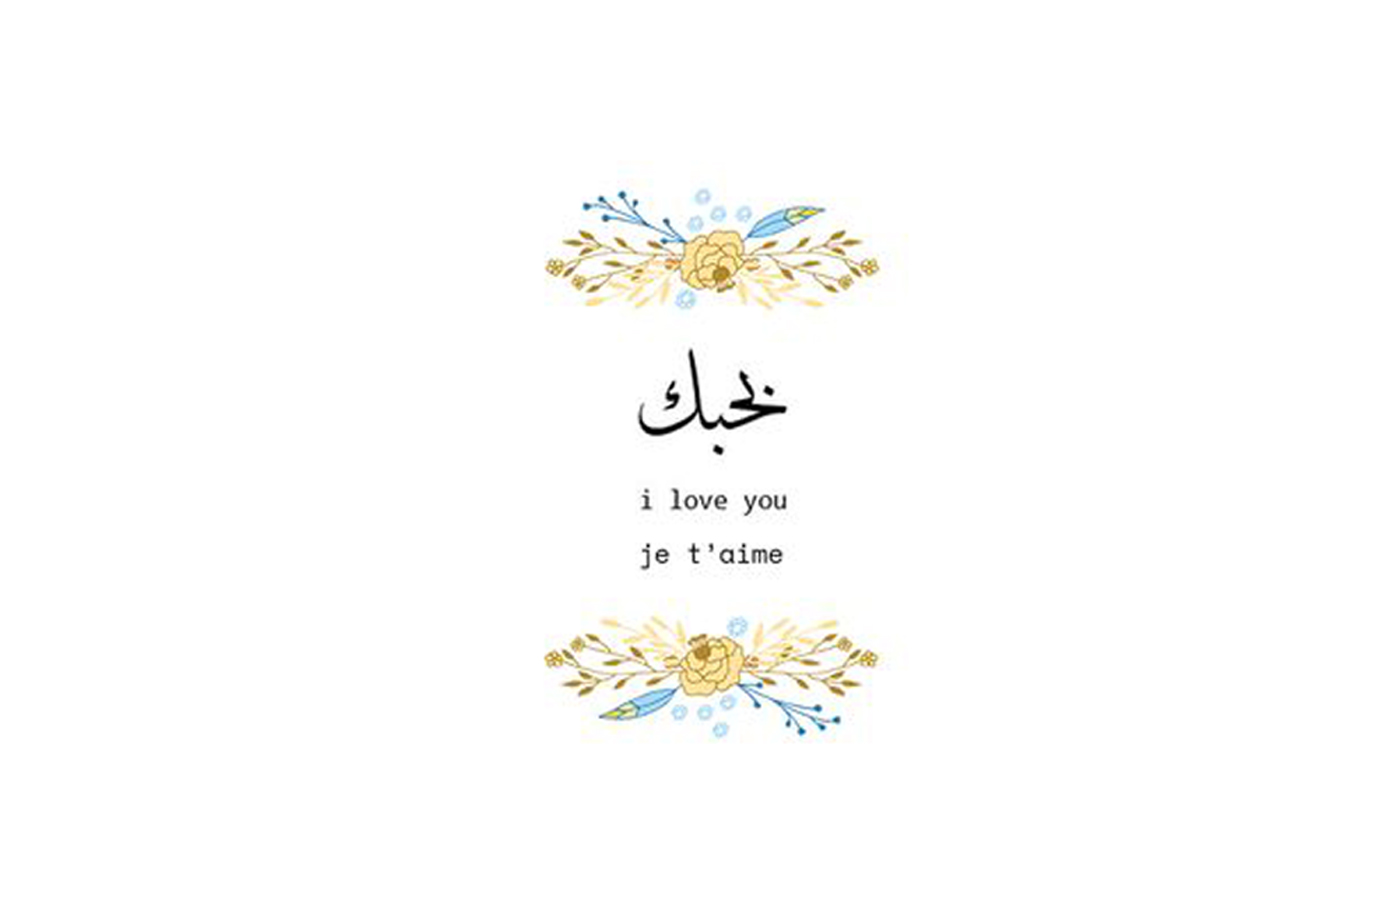 Top: 아랍어로 사랑한다고 말하는 10가지 아름다운 방법